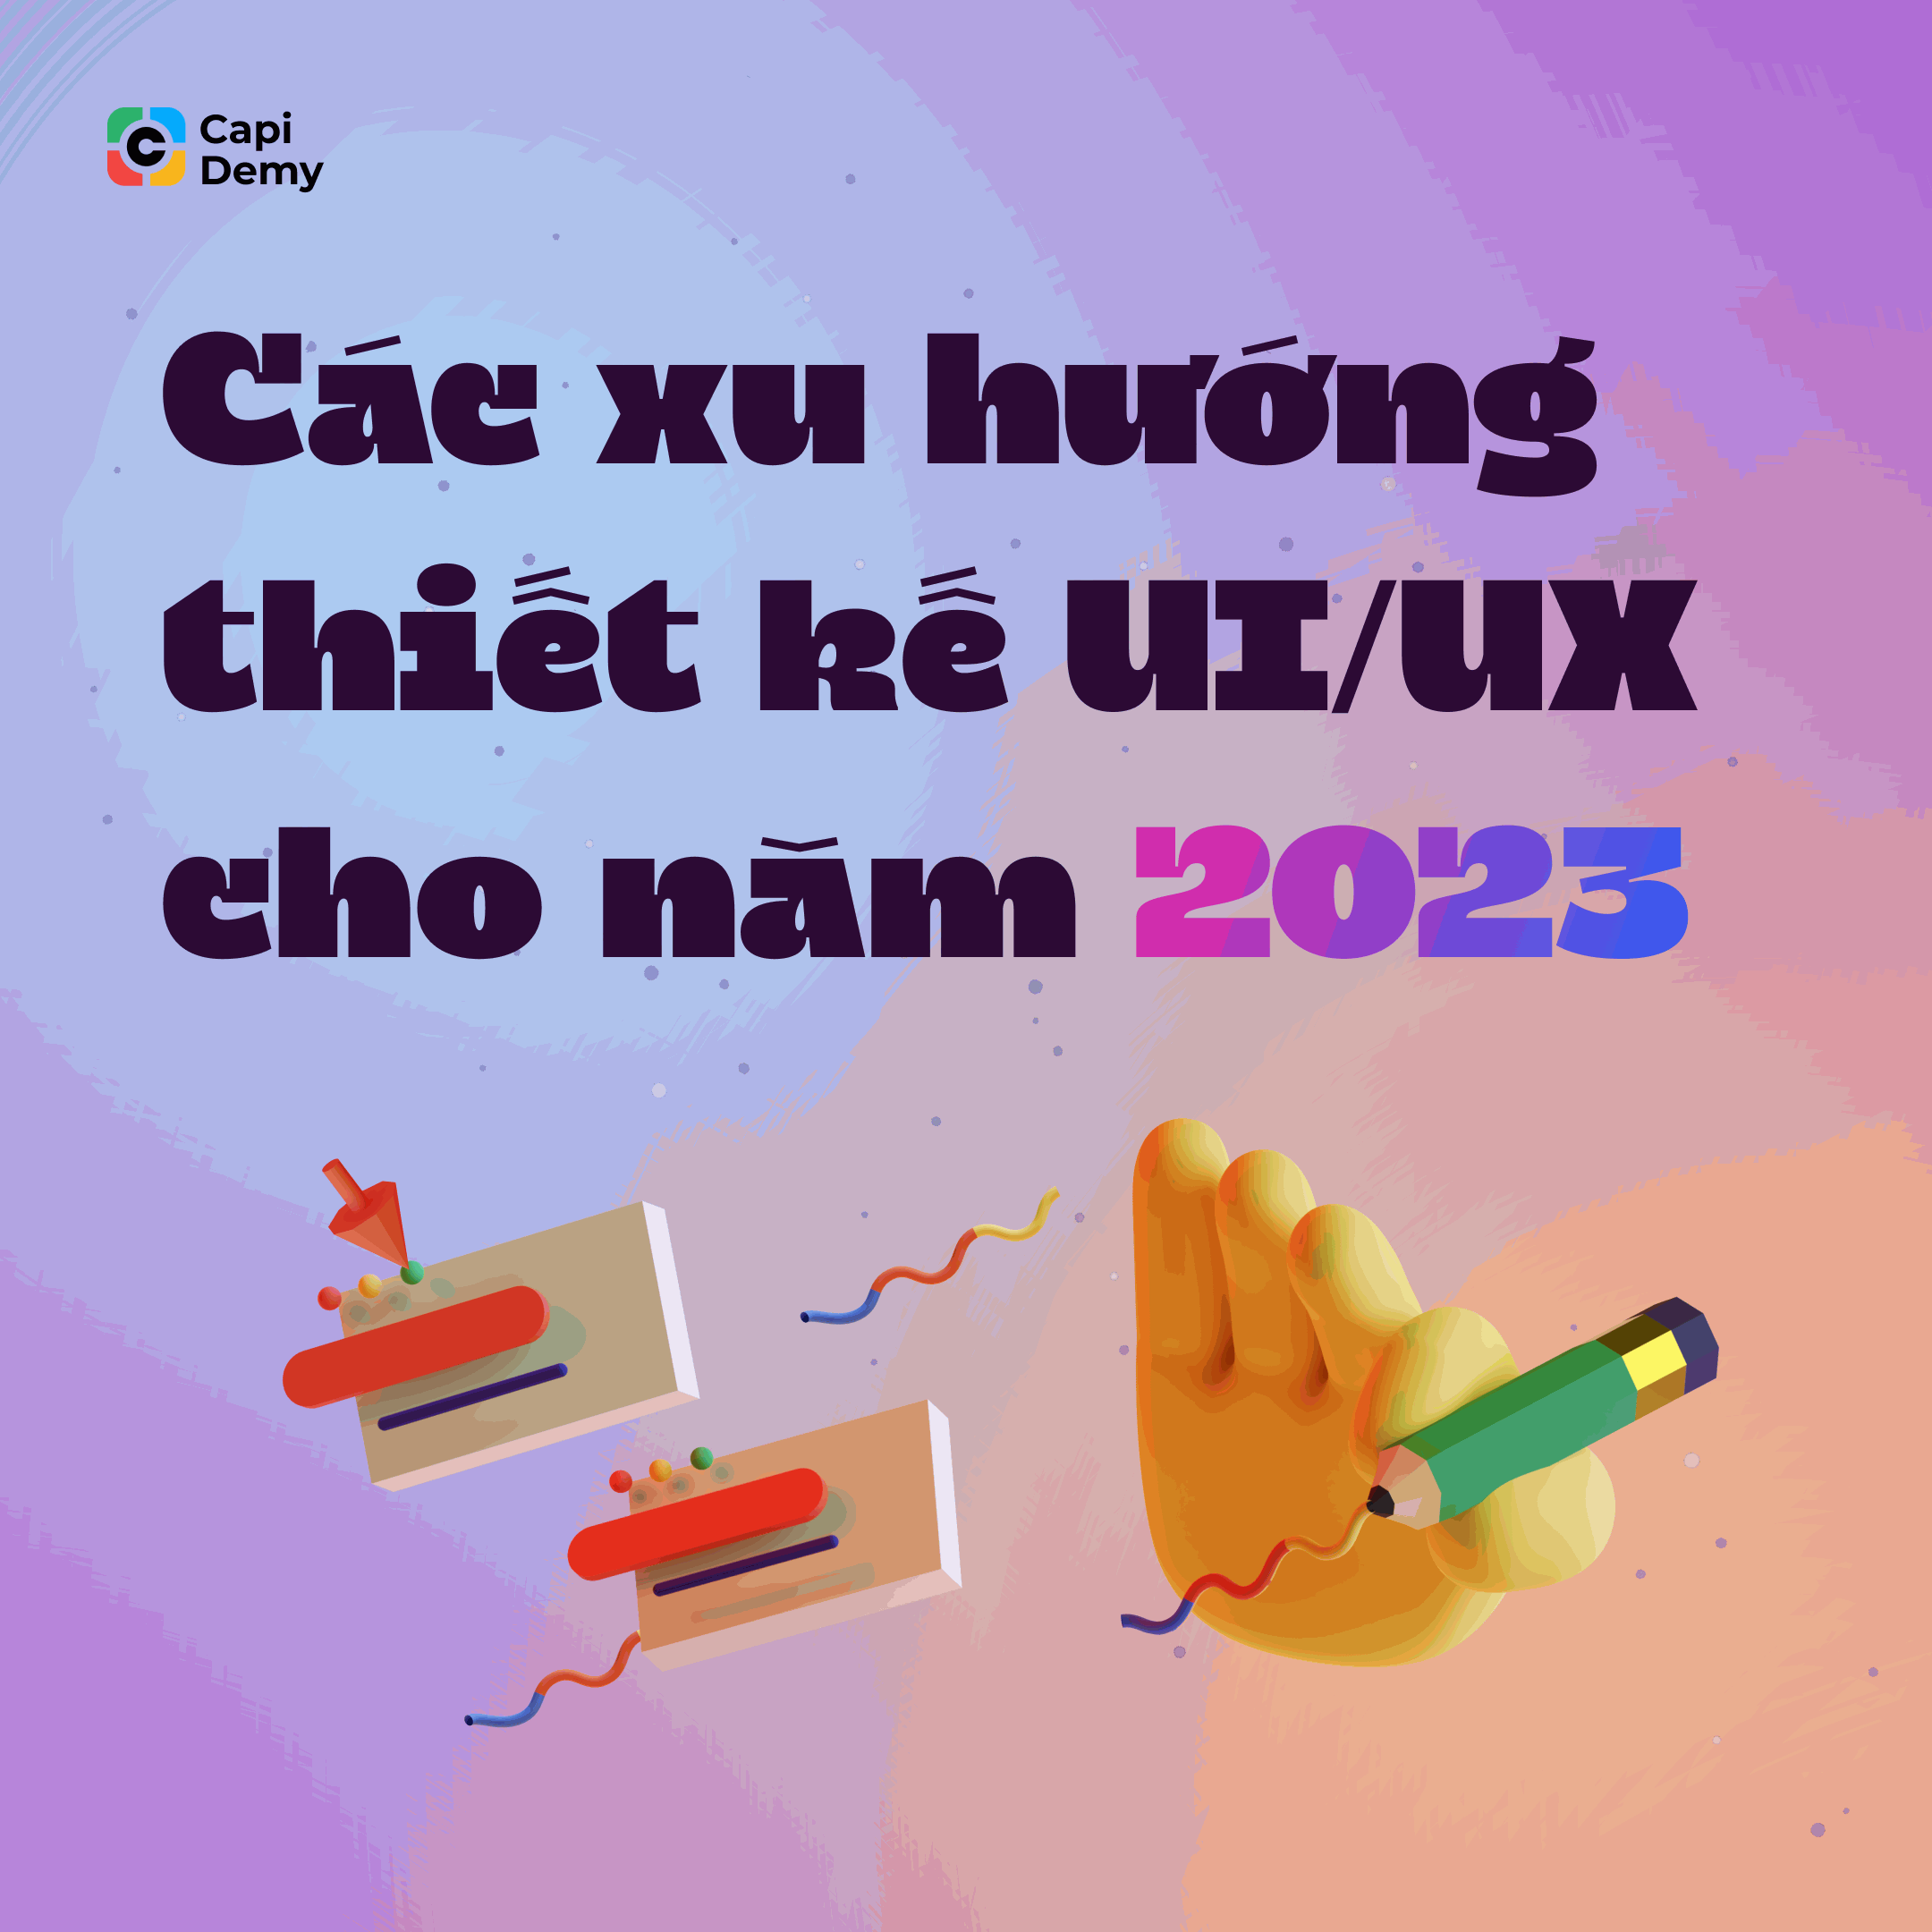 xu hướng thiết kế ui/ux cho năm 2023